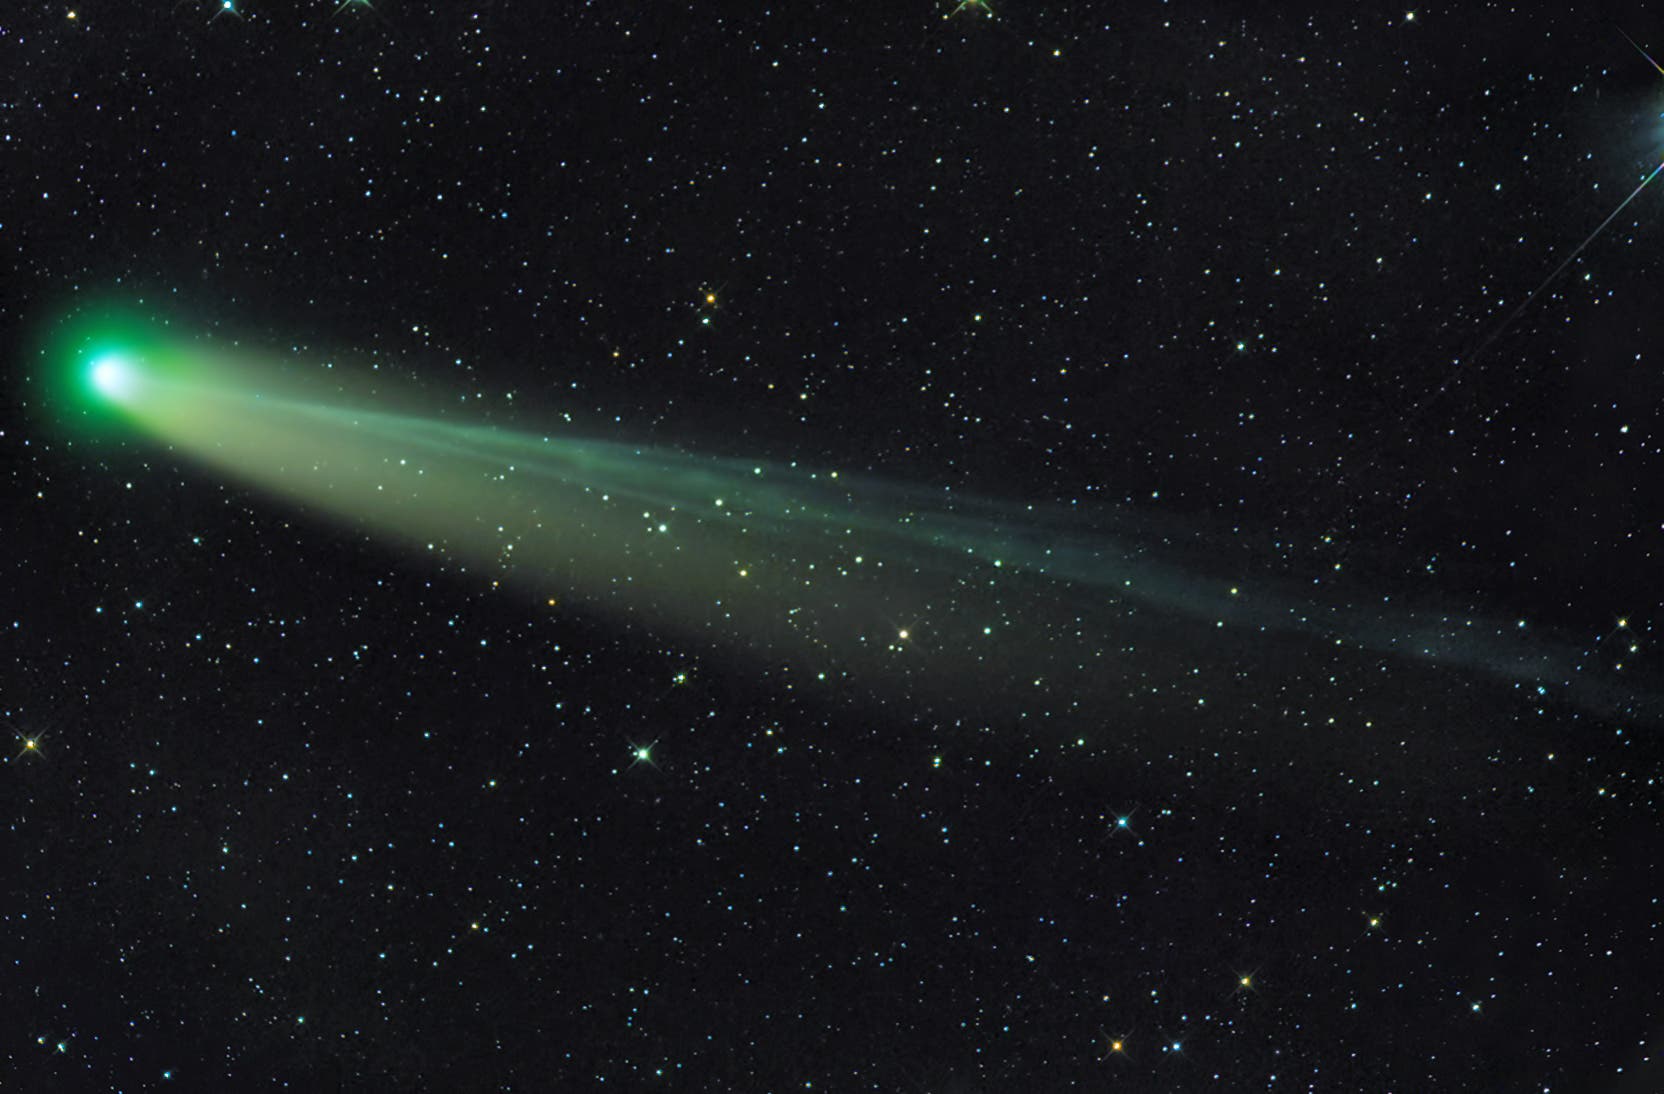 Komet C/2013R1 (Lovejoy) am 15. Dezember 2013